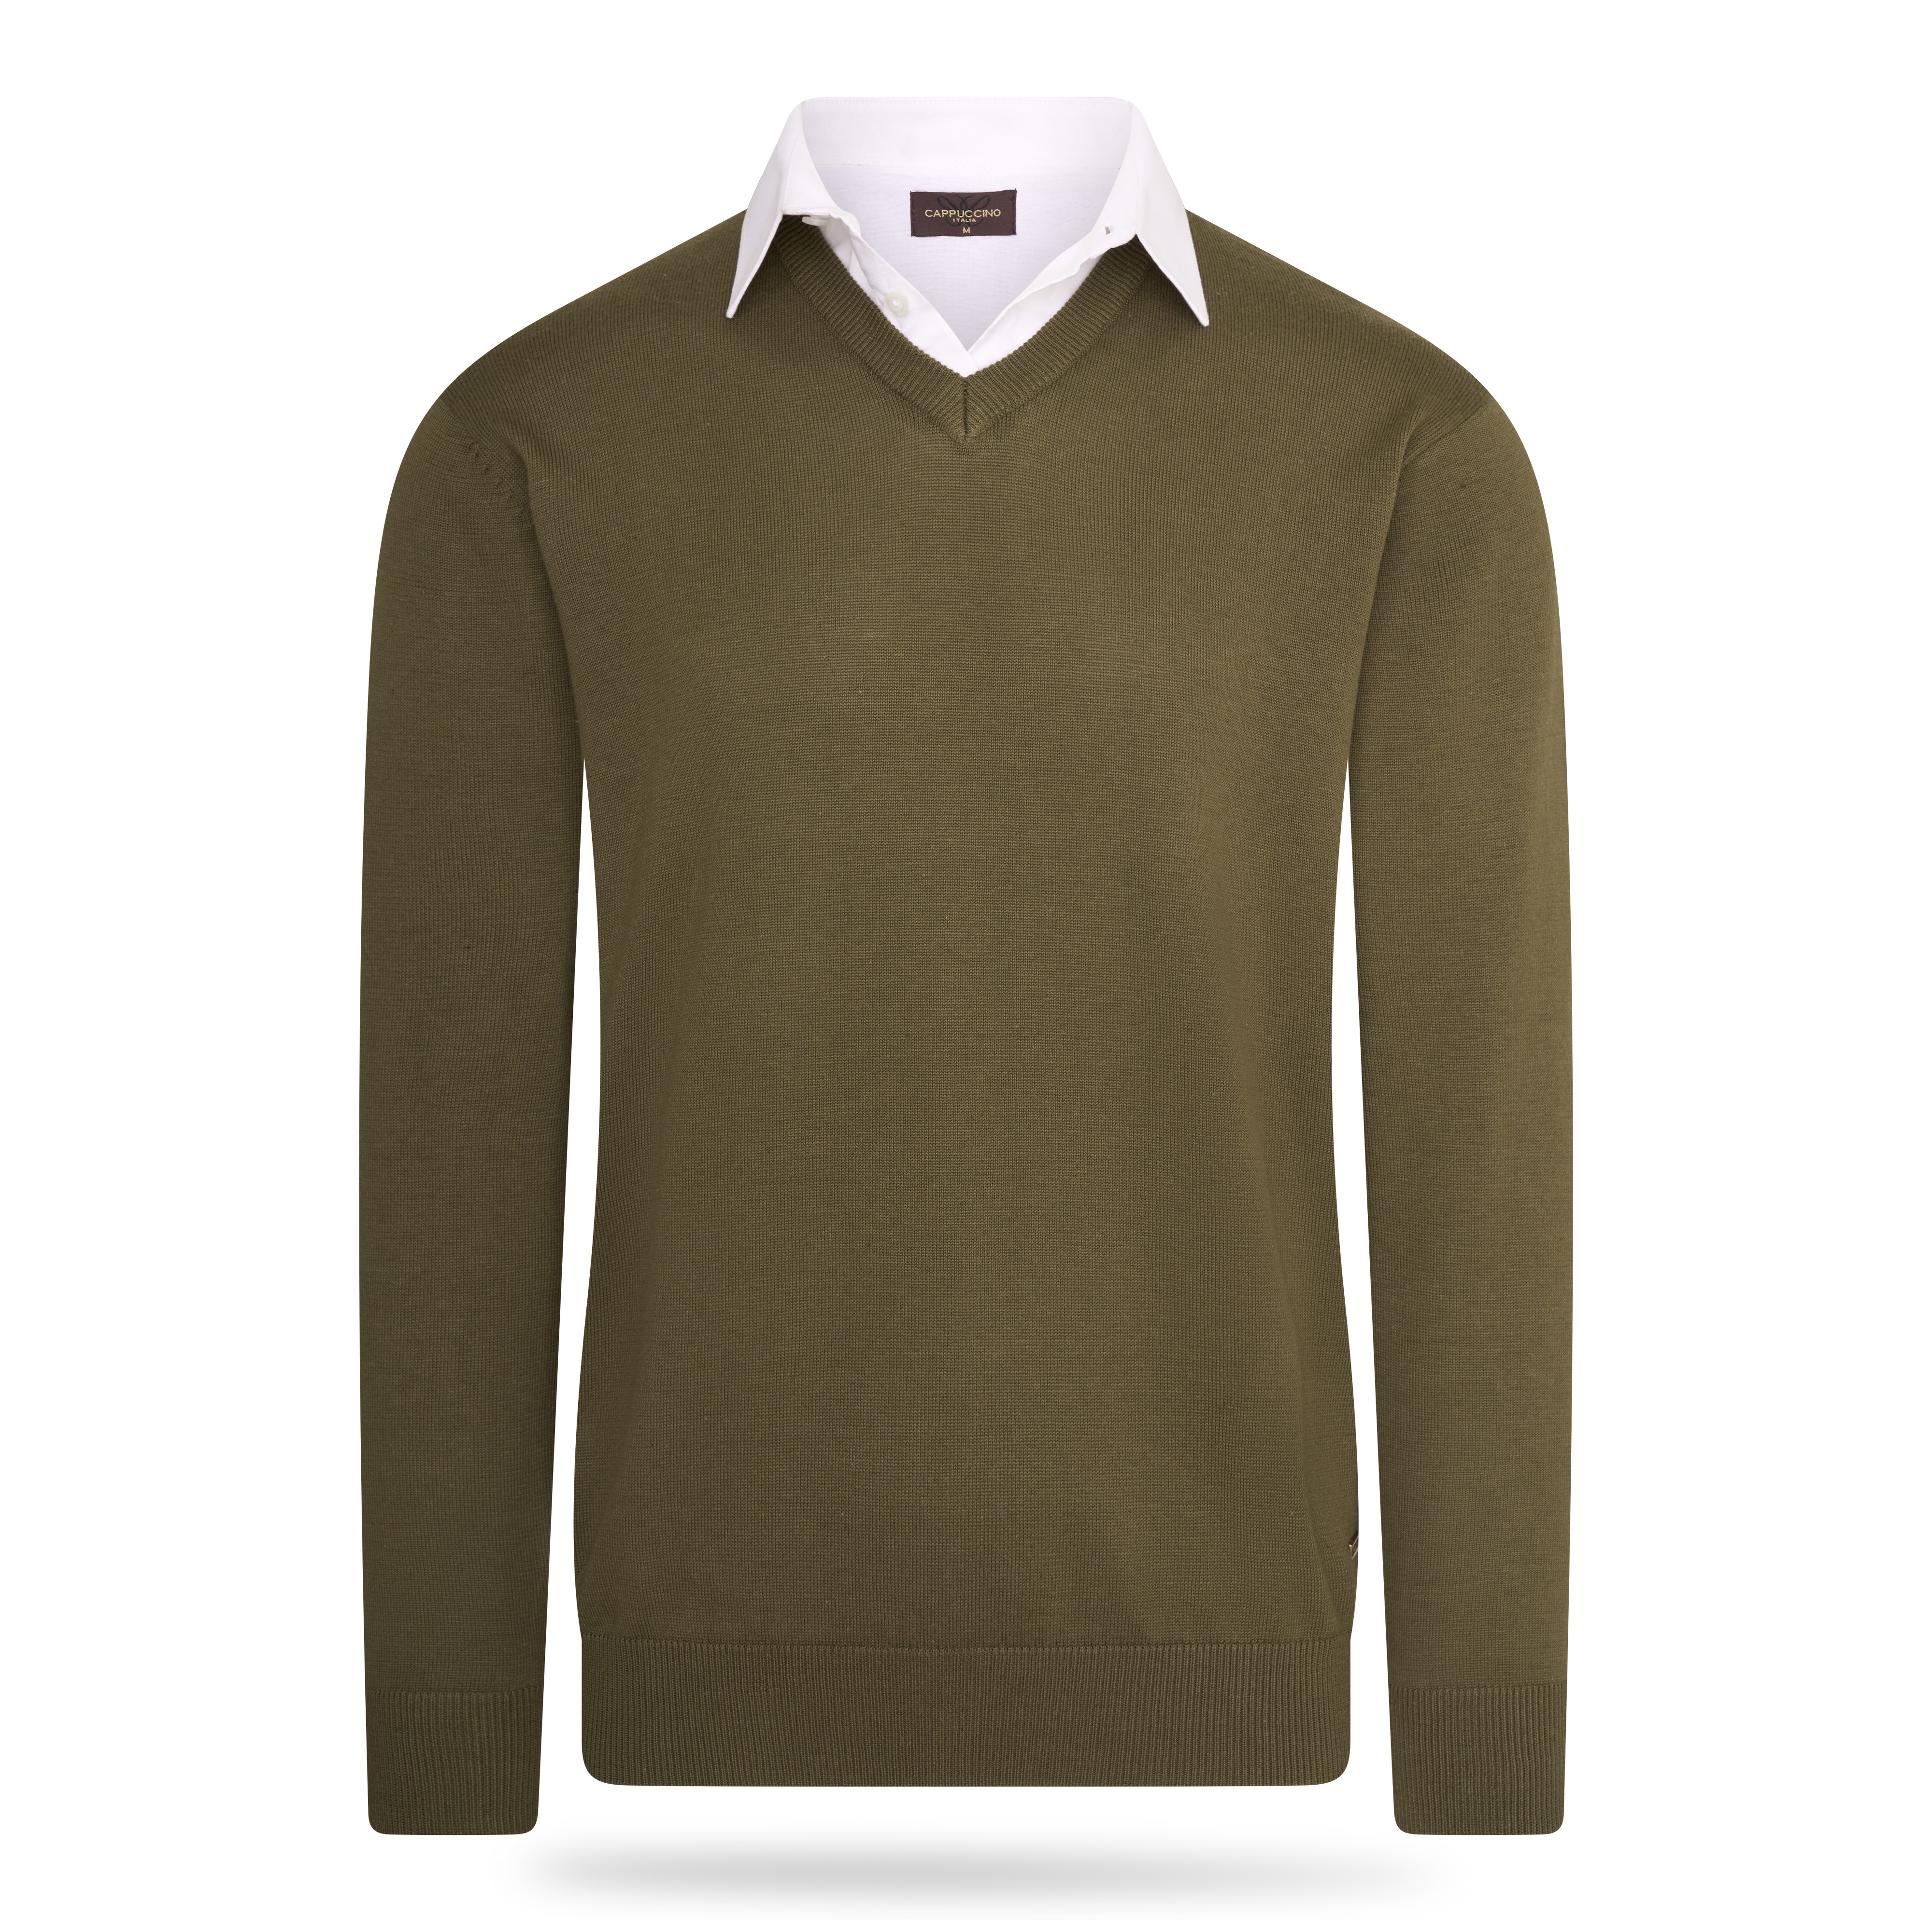 Rot 40 HERREN Pullovers & Sweatshirts Fleece Rabatt 98 % NoName sweatshirt 